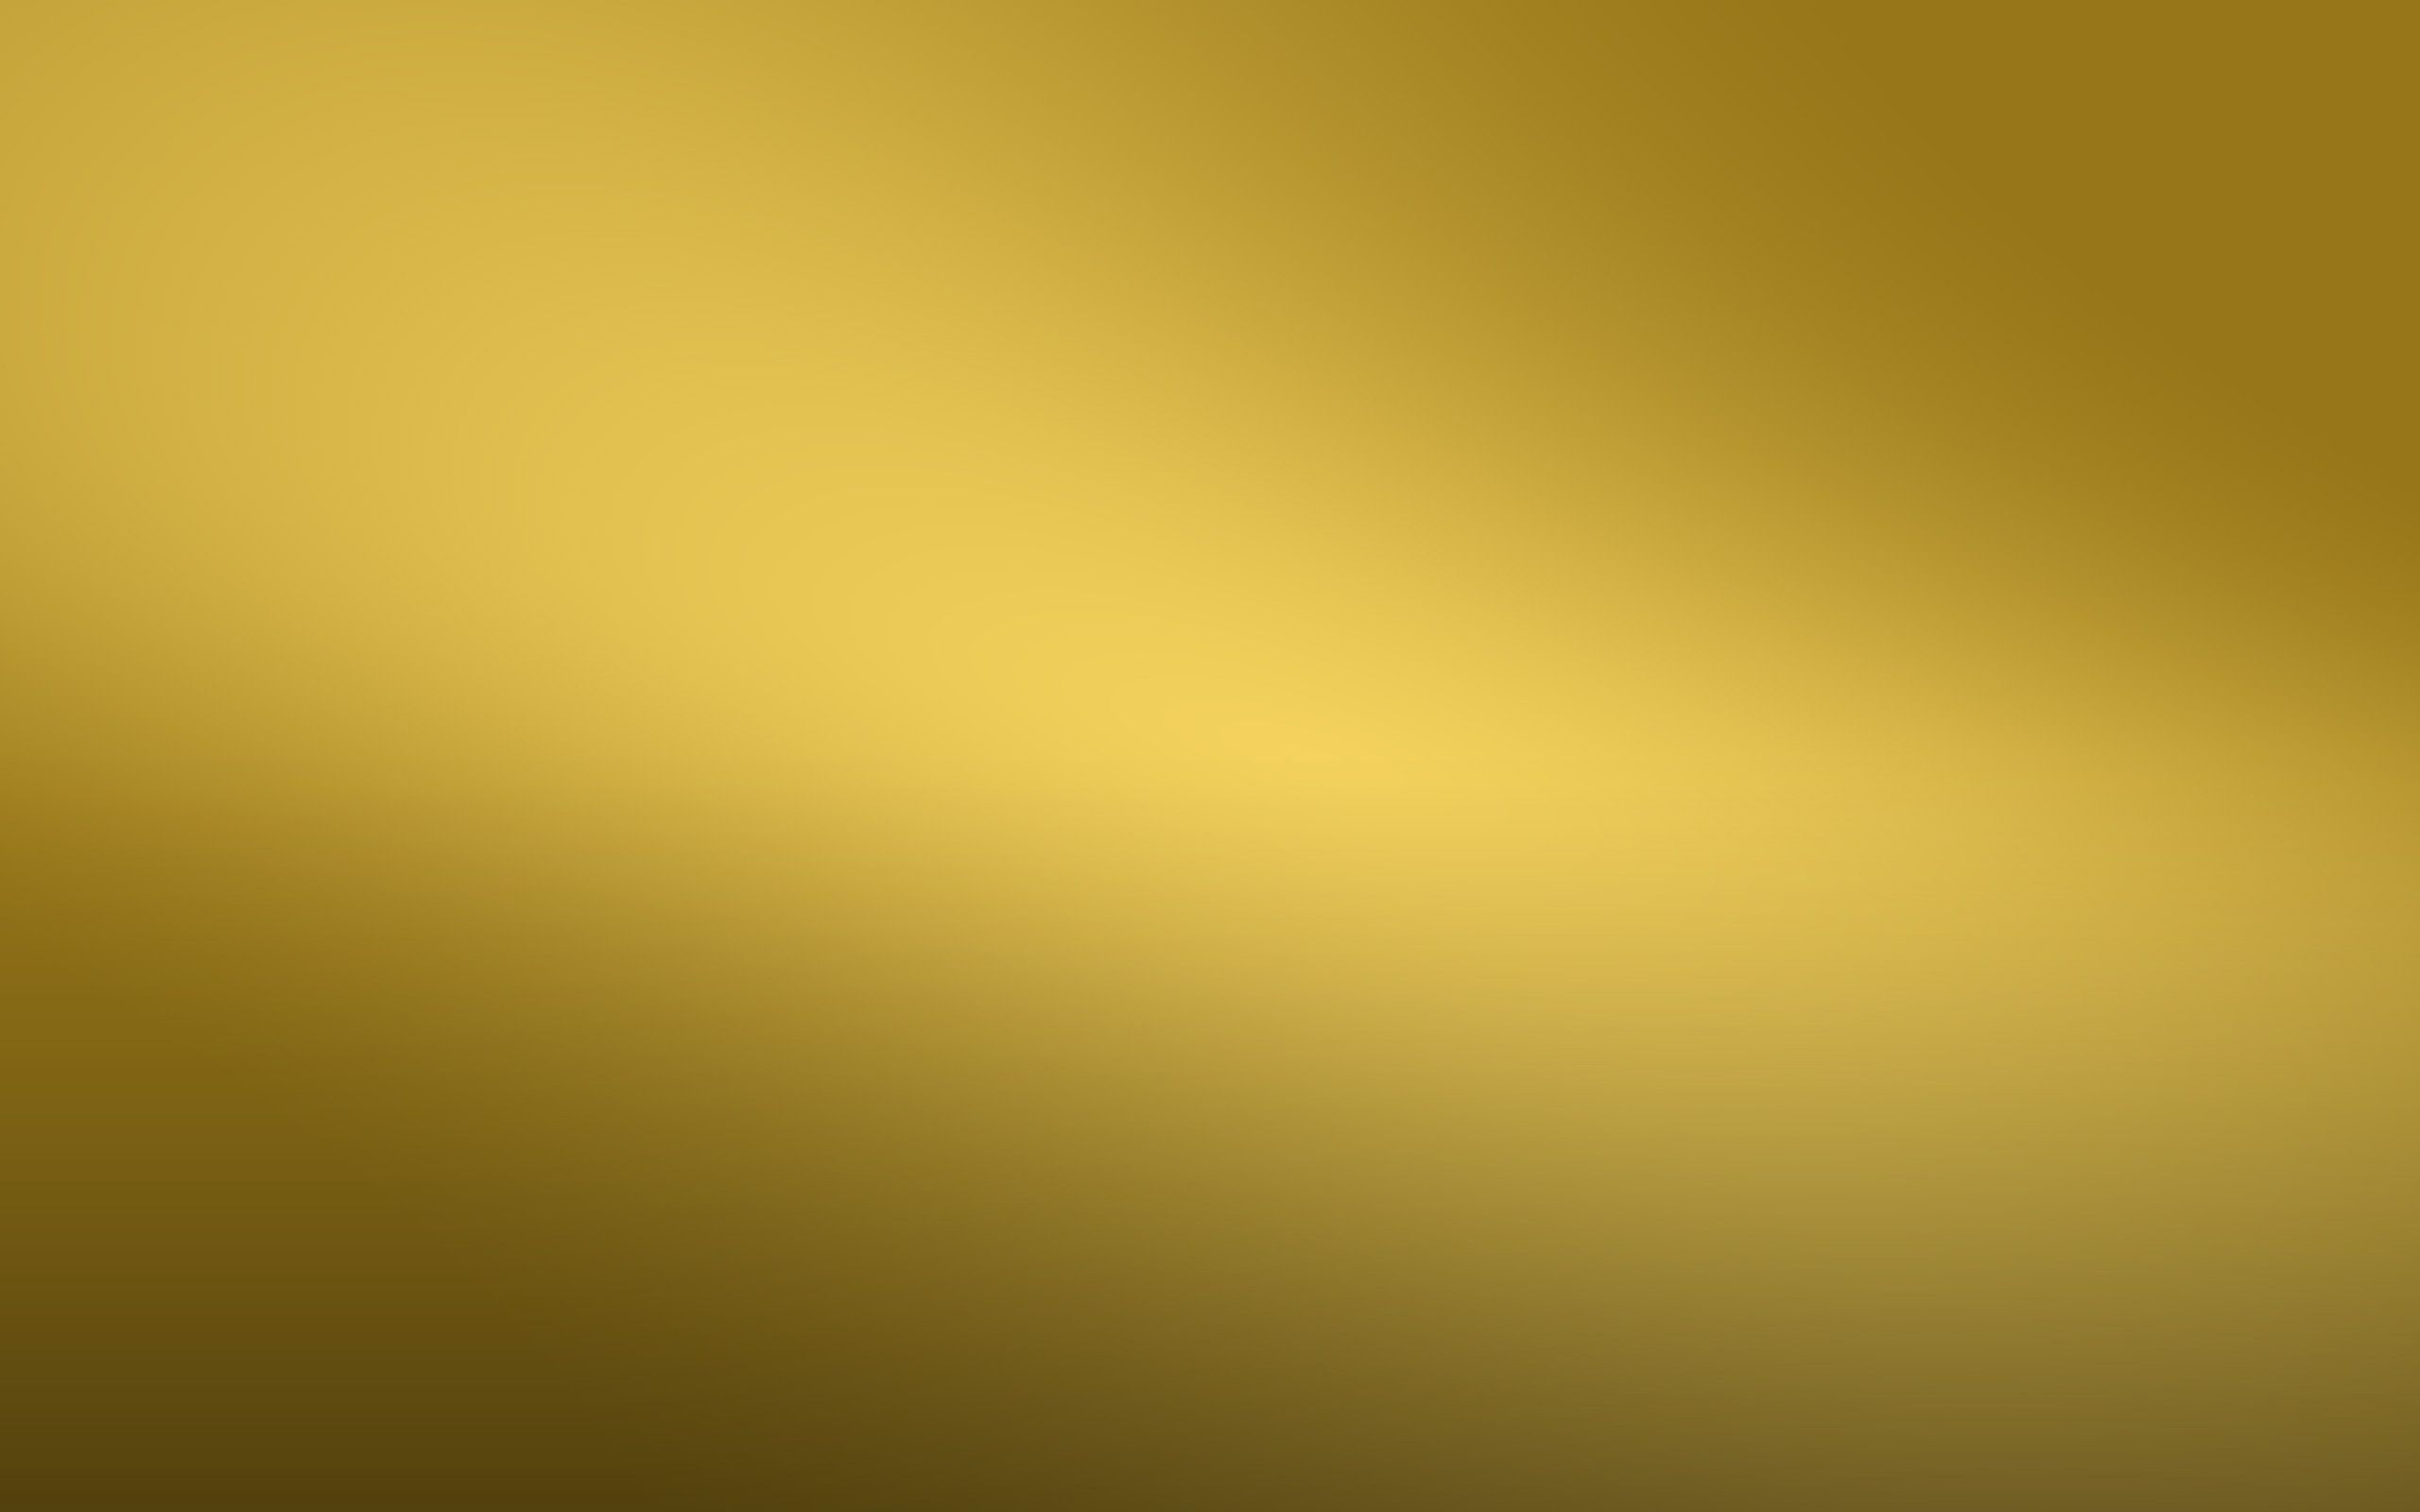 Hình nền vàng 24K là biểu tượng của sự sang trọng và đẳng cấp. Hãy tận hưởng sự độc đáo và quý giá của màu vàng 24K trong những hình nền đẹp và sáng tạo!